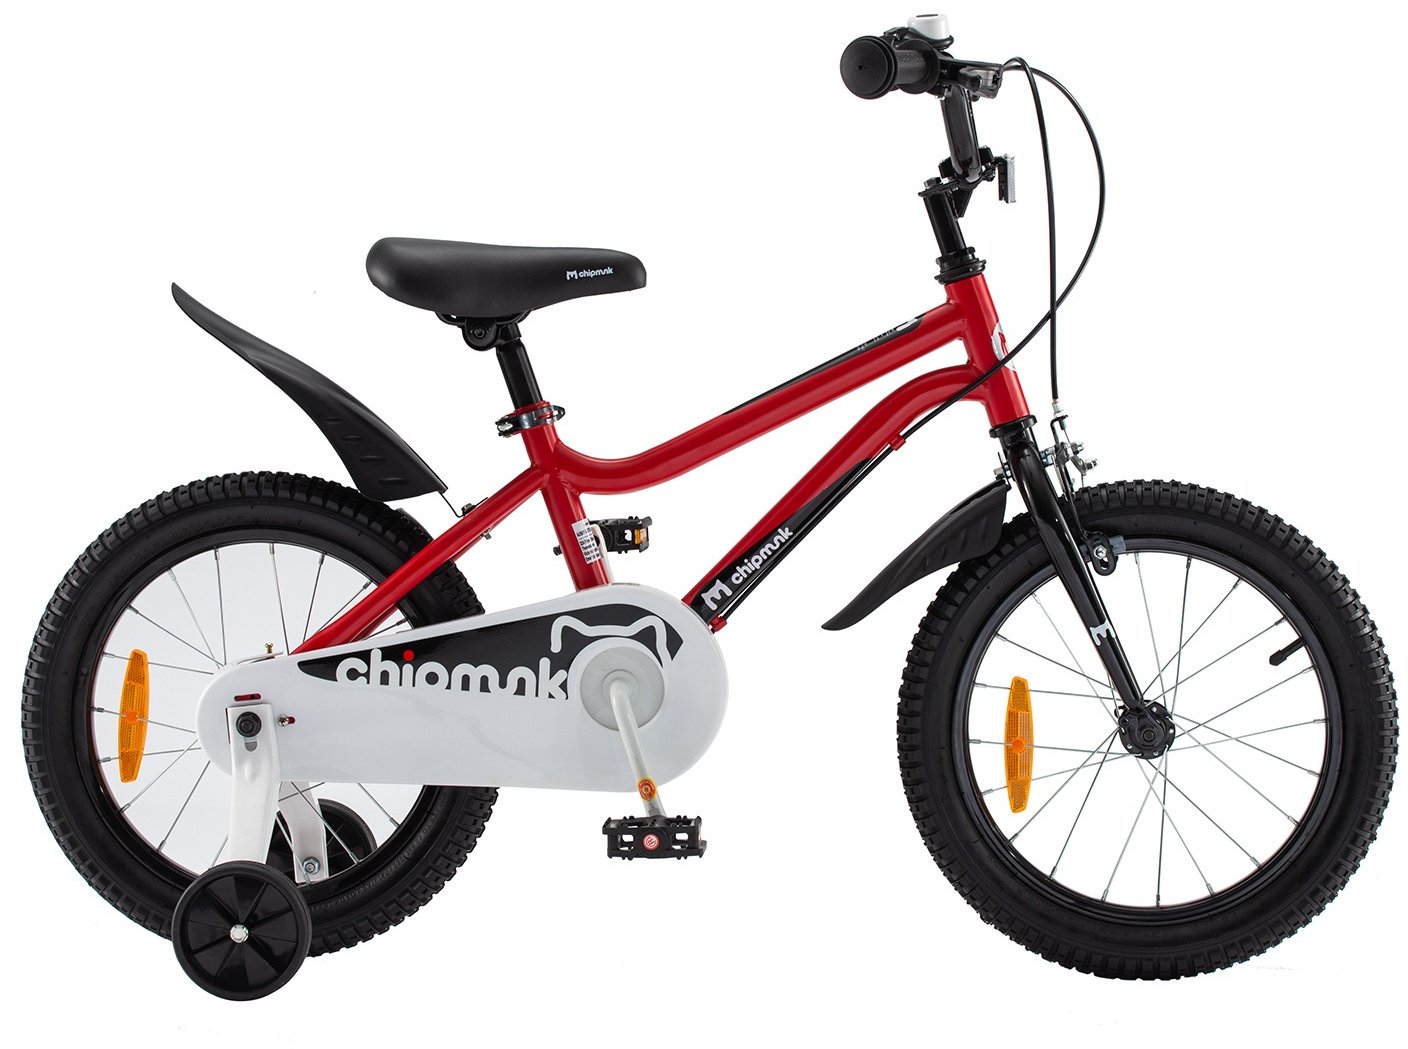 Акция на Велосипед детский RoyalBaby Chipmunk Darling 18 Official Ua красный (CM18-1-red) от Stylus